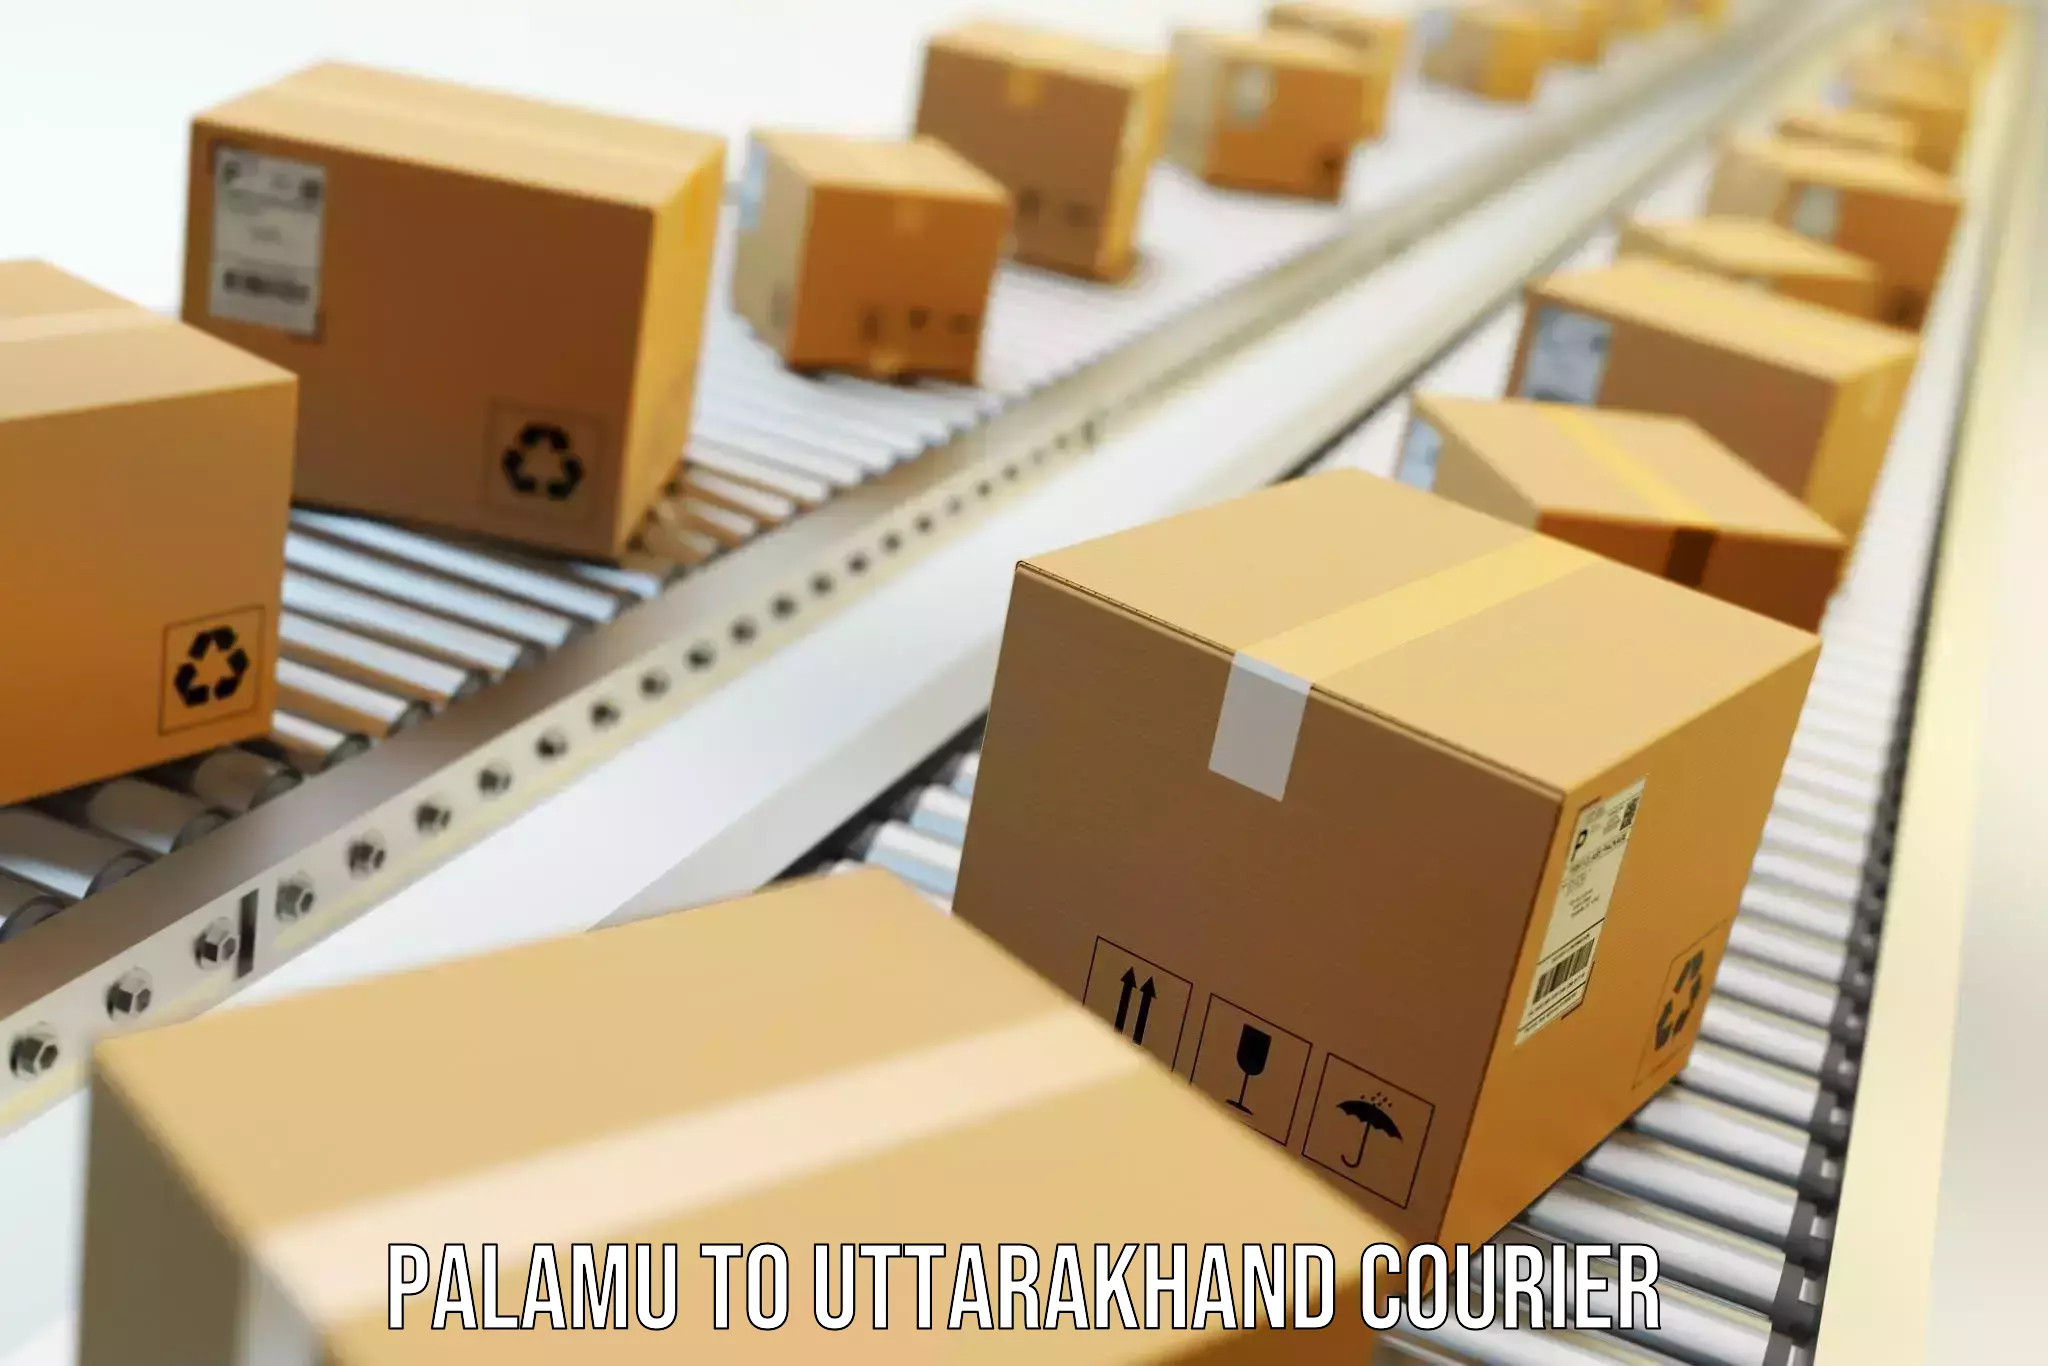 Moving and storage services Palamu to Uttarakhand